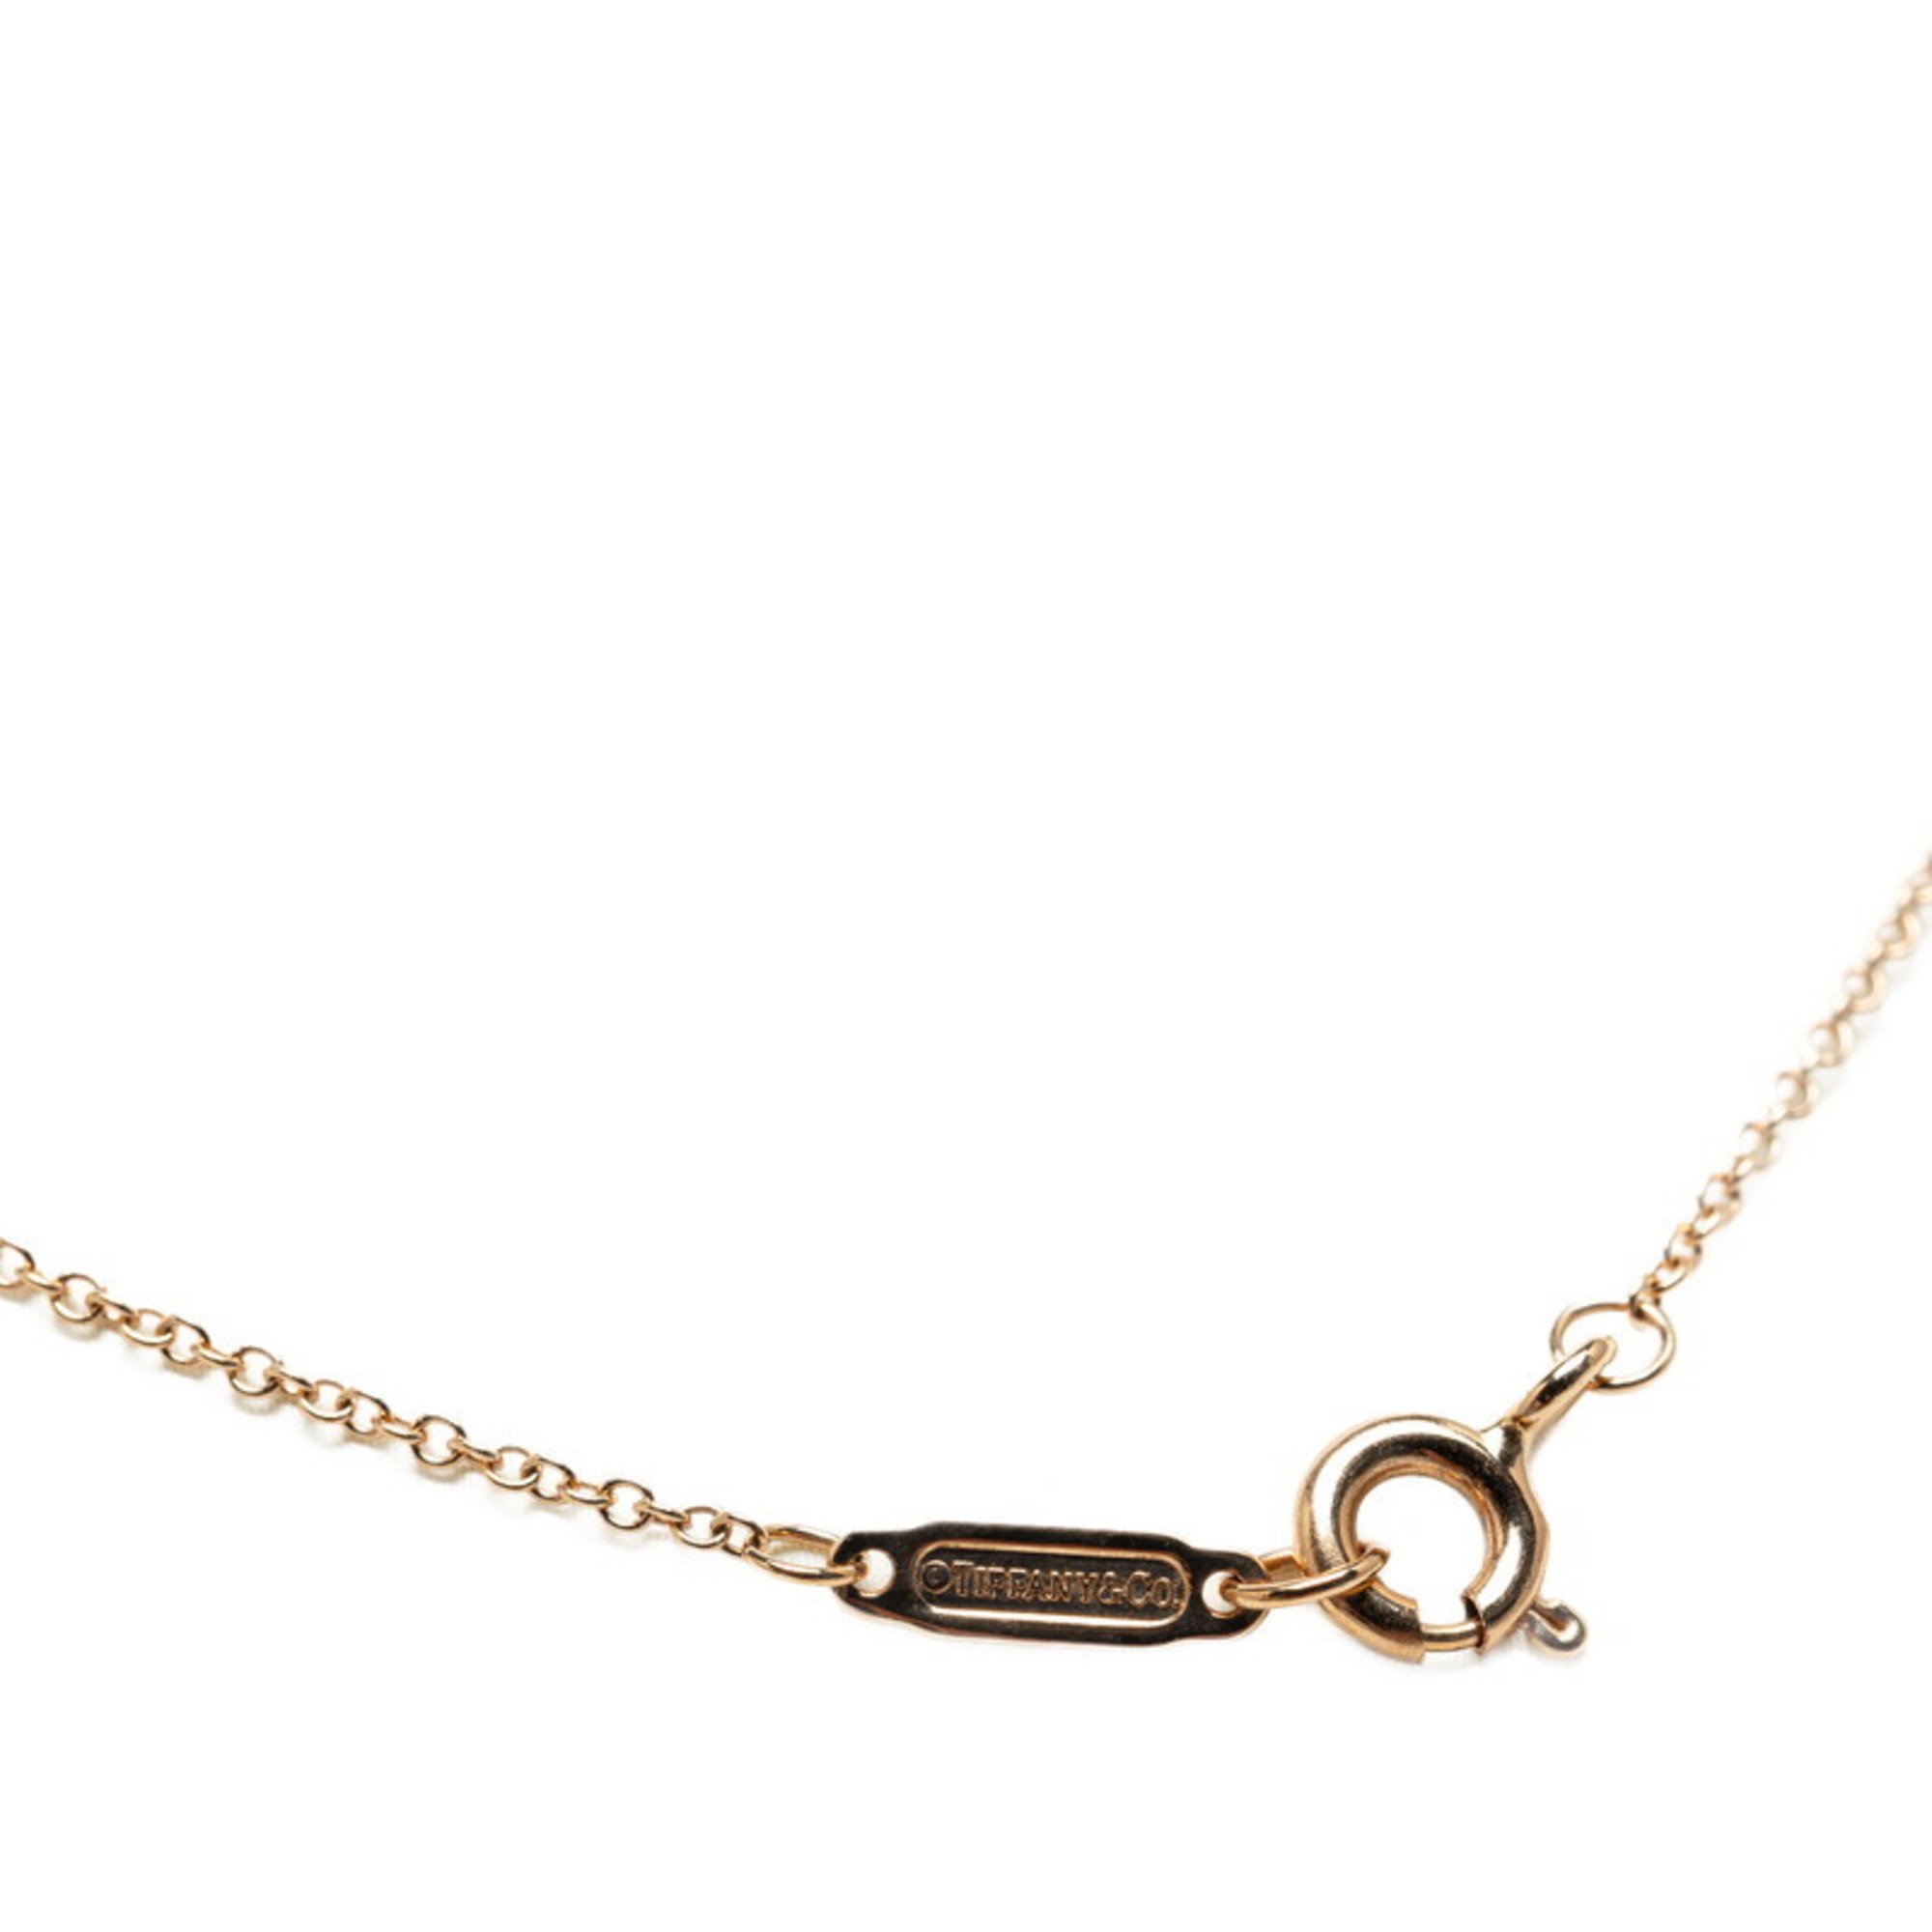 Tiffany Circlet Diamond Necklace 750 Ladies TIFFANY&Co.